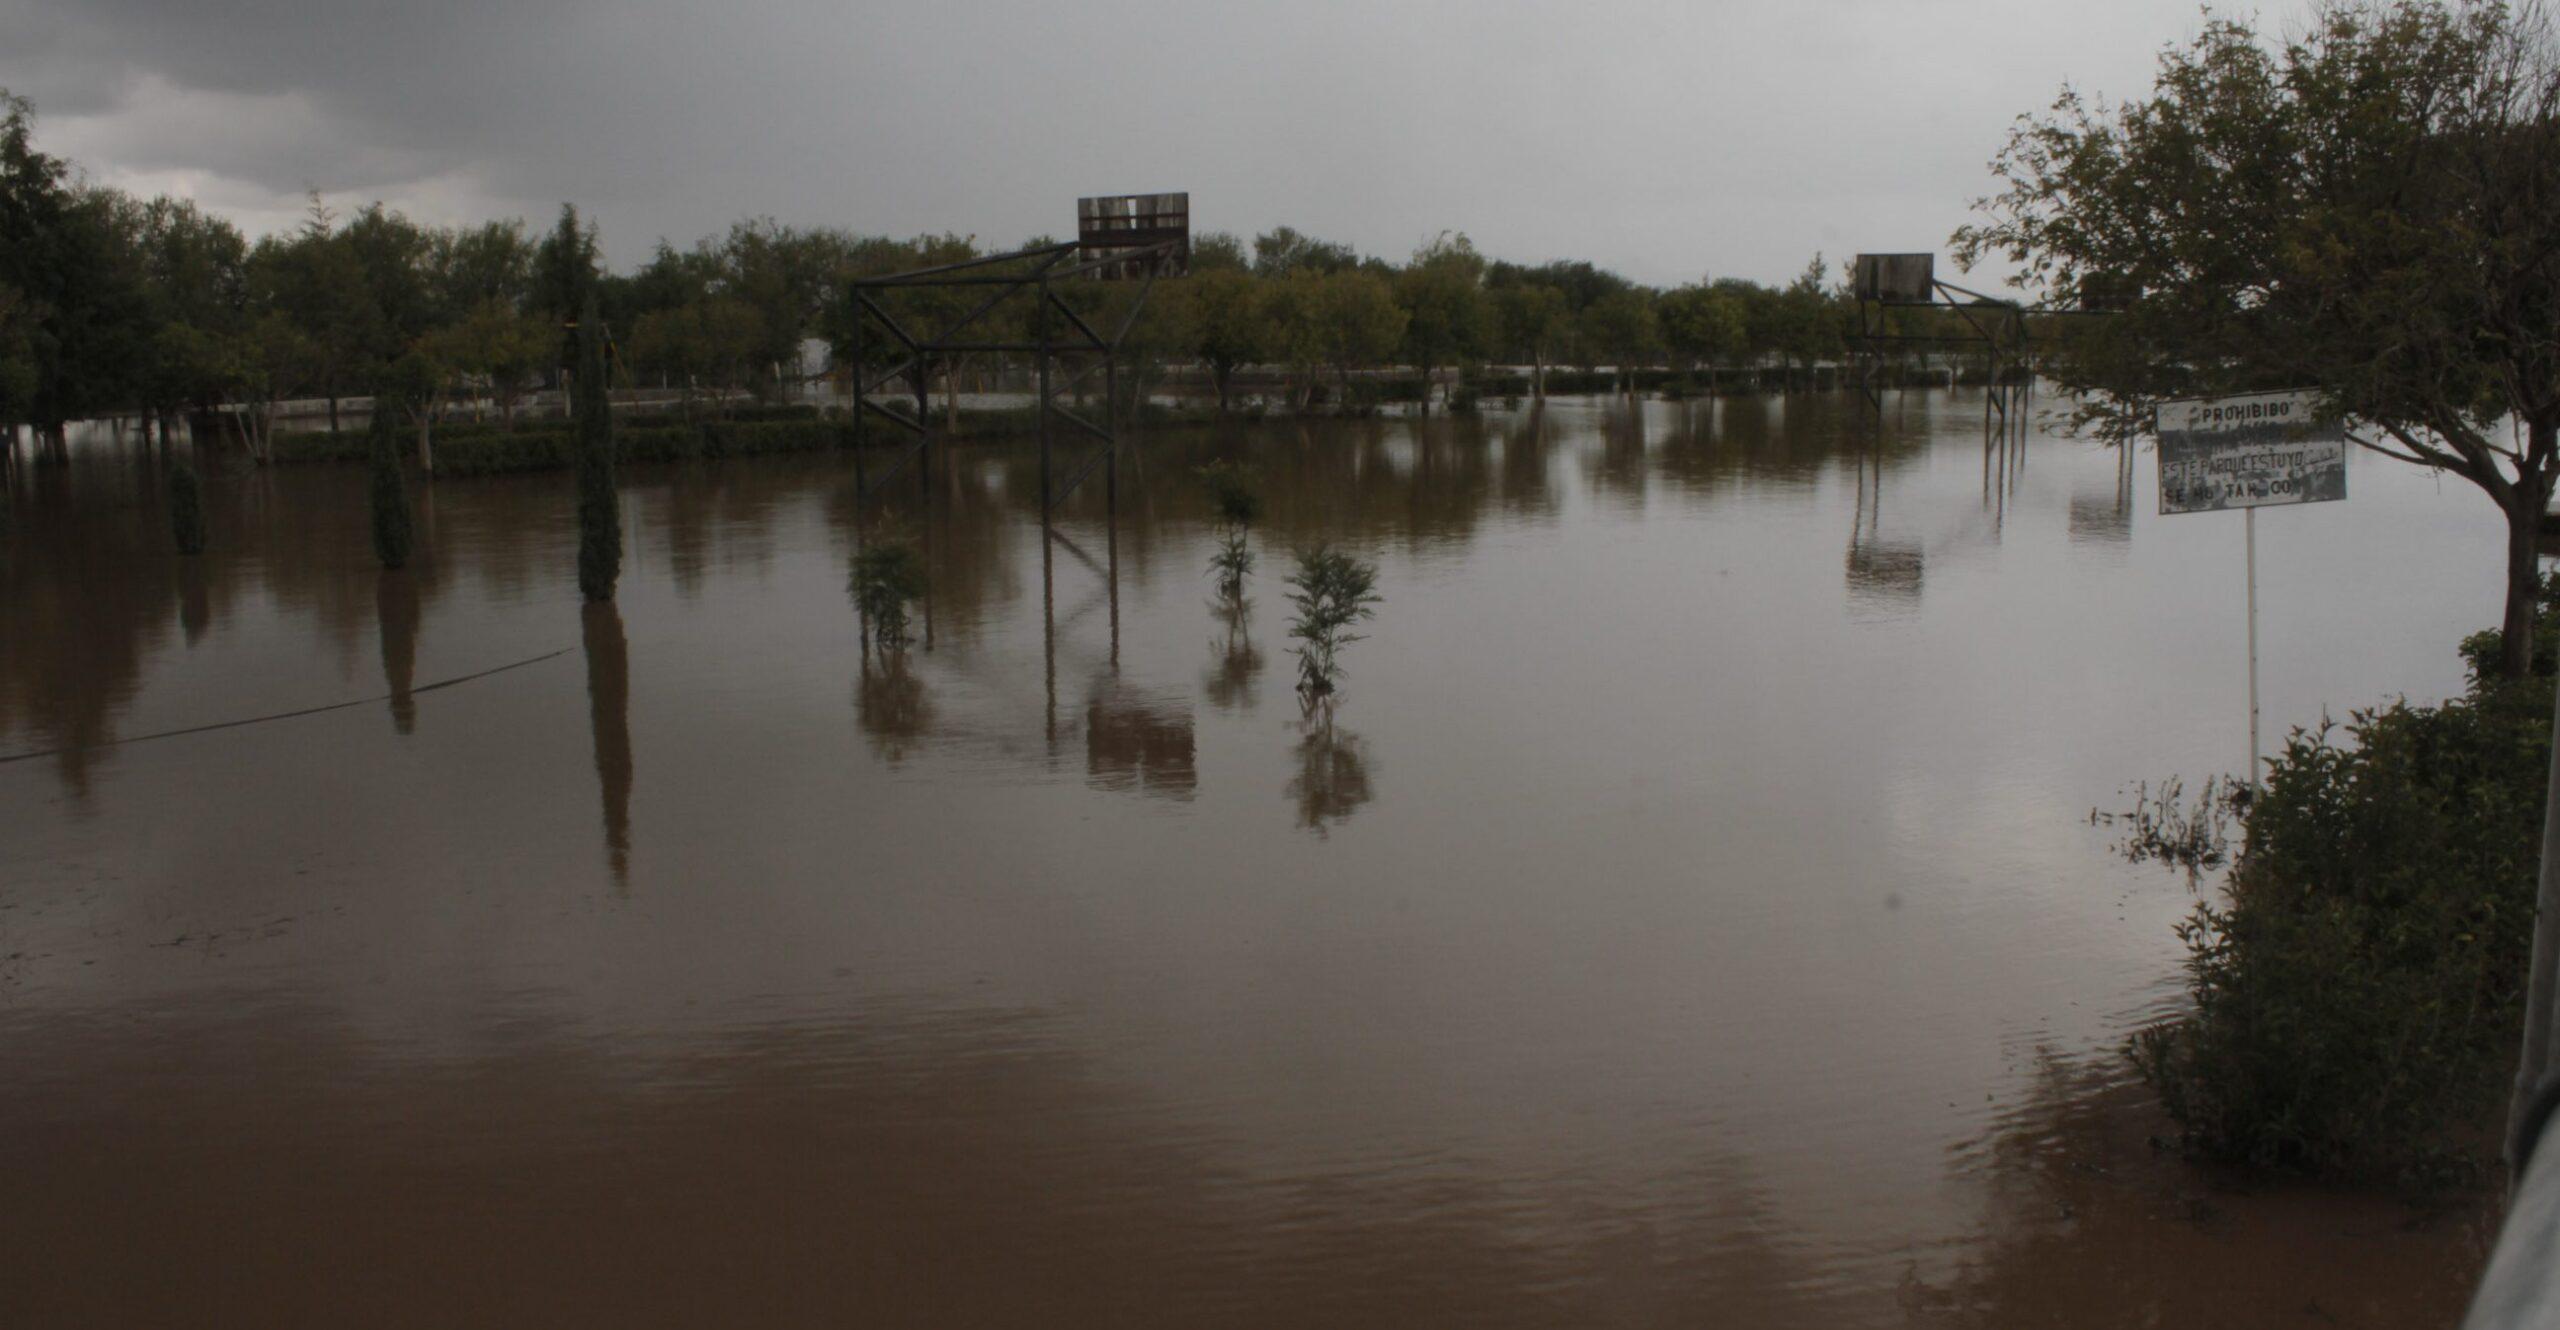 Mina de Grupo México contamina río en Zacatecas usado para sembradíos y consumo humano